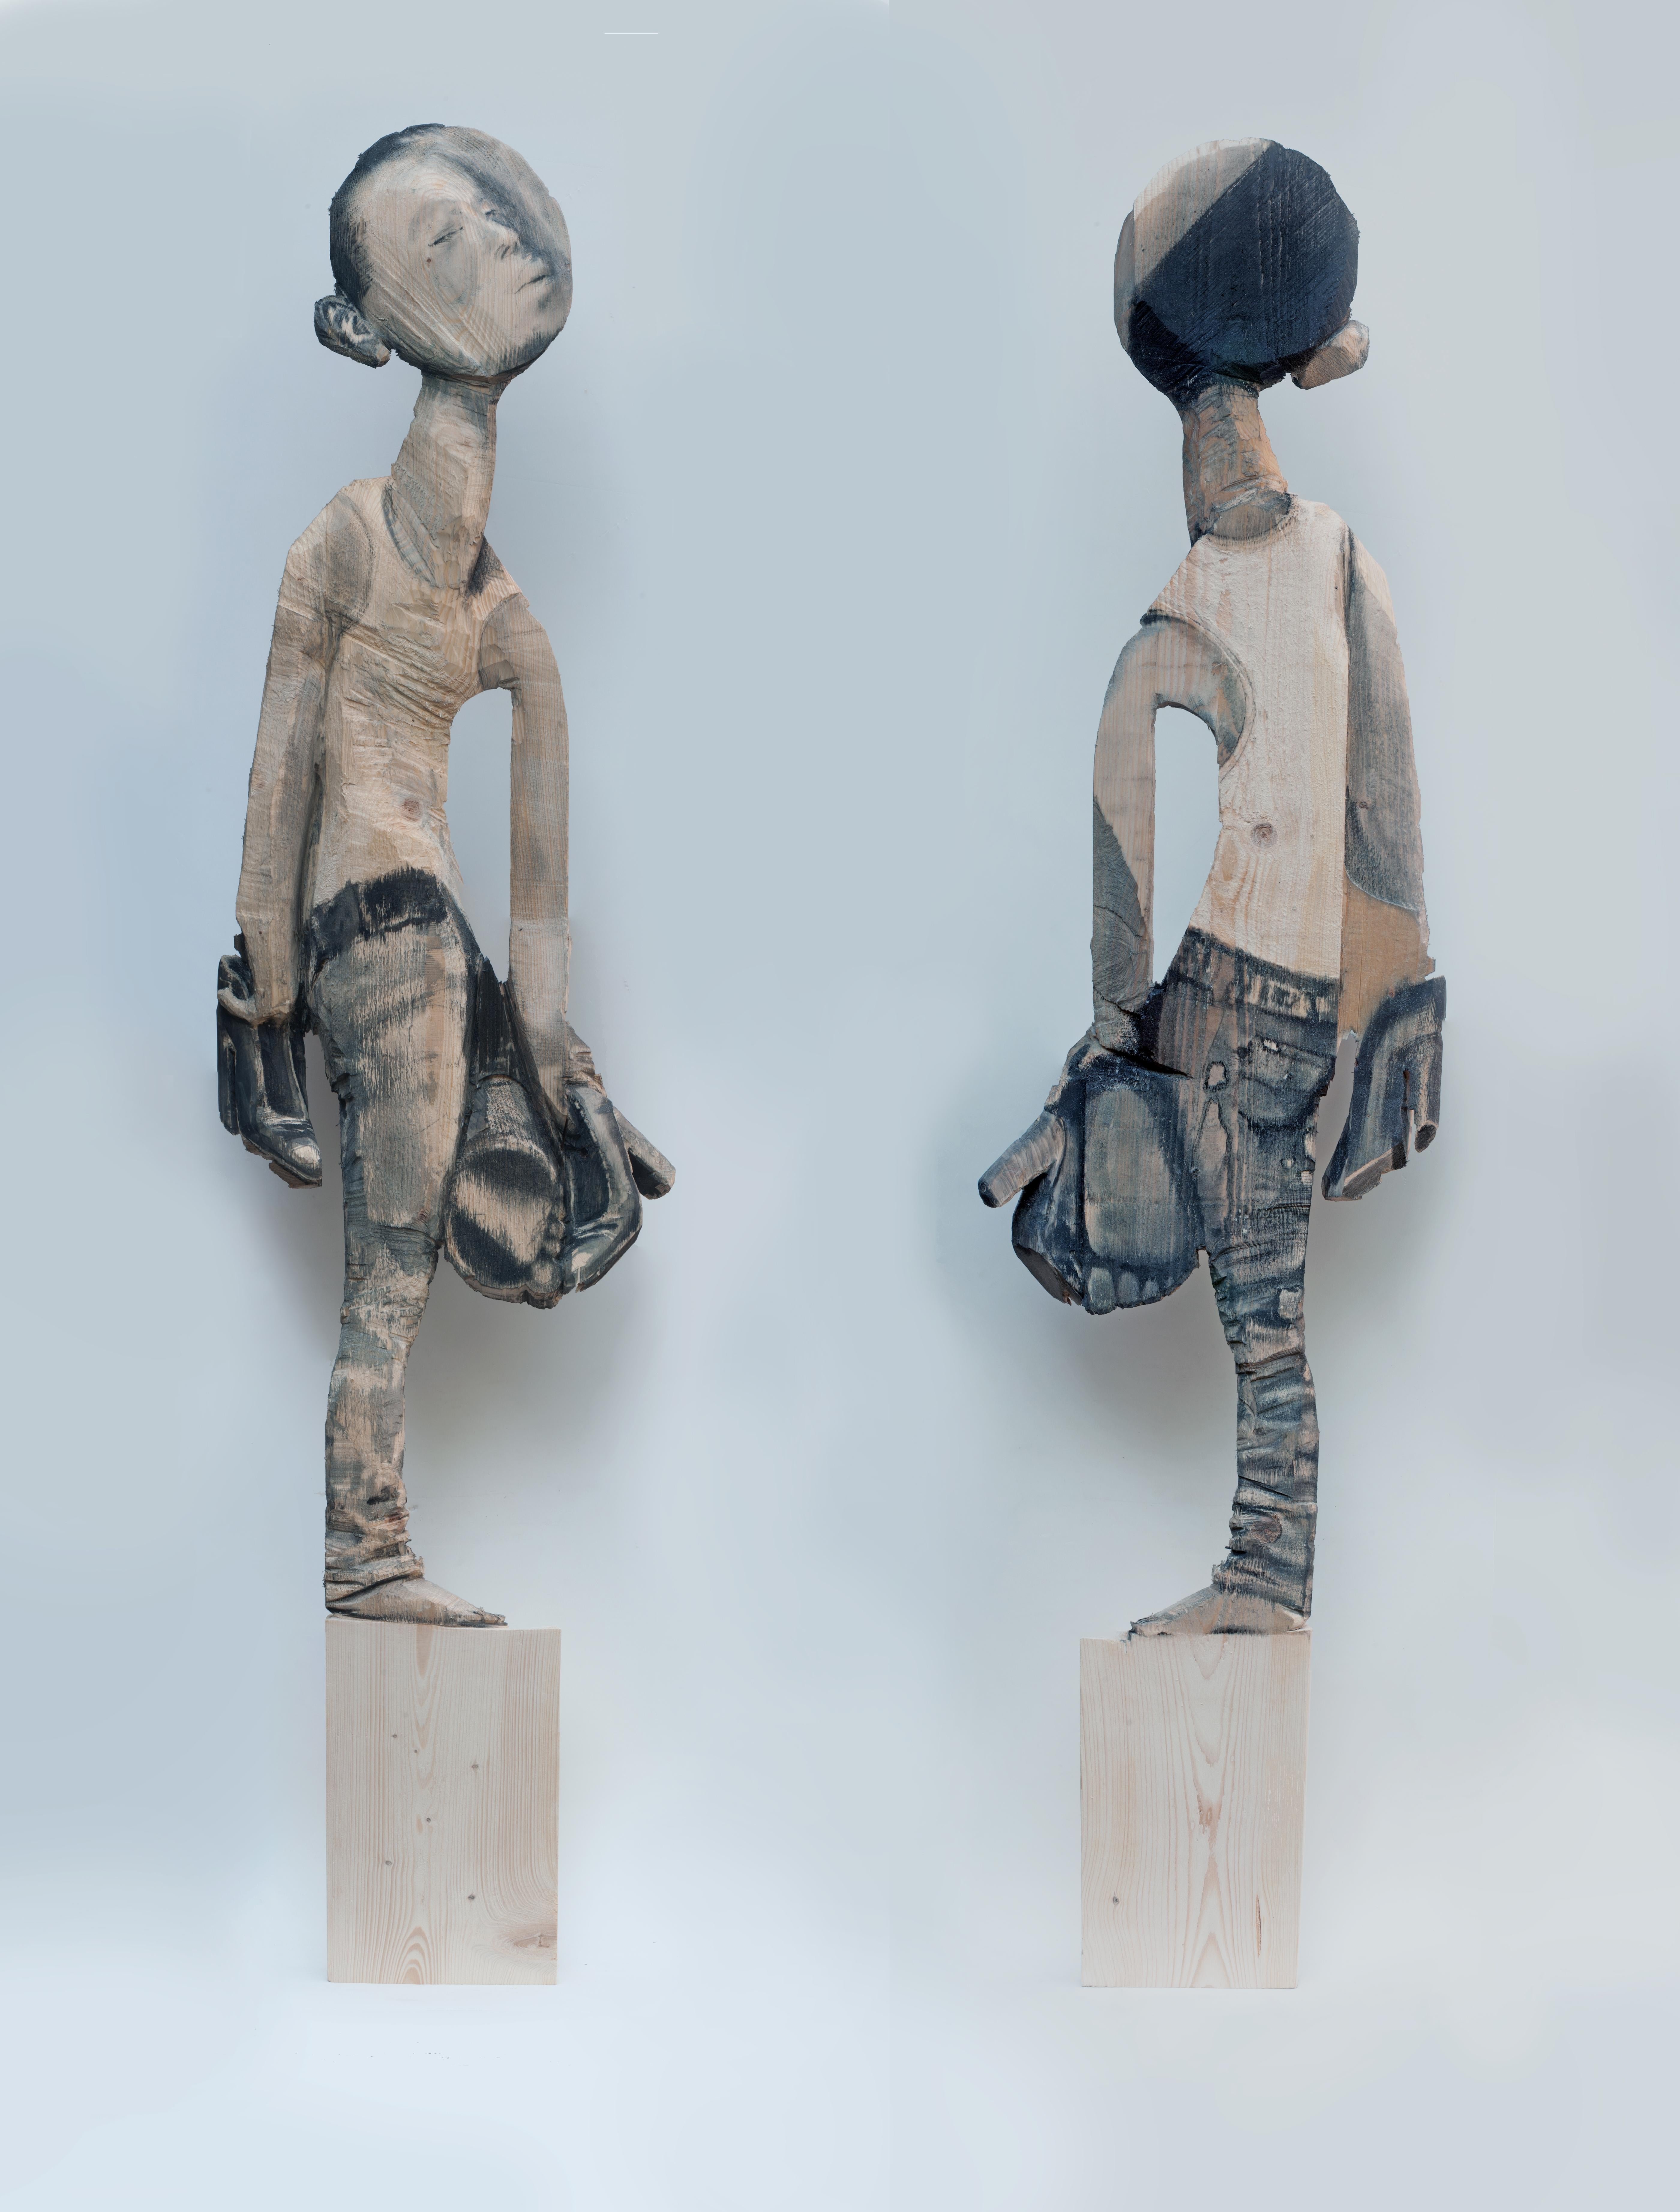 The Art Viewer - Sculpture by Martin Krammer